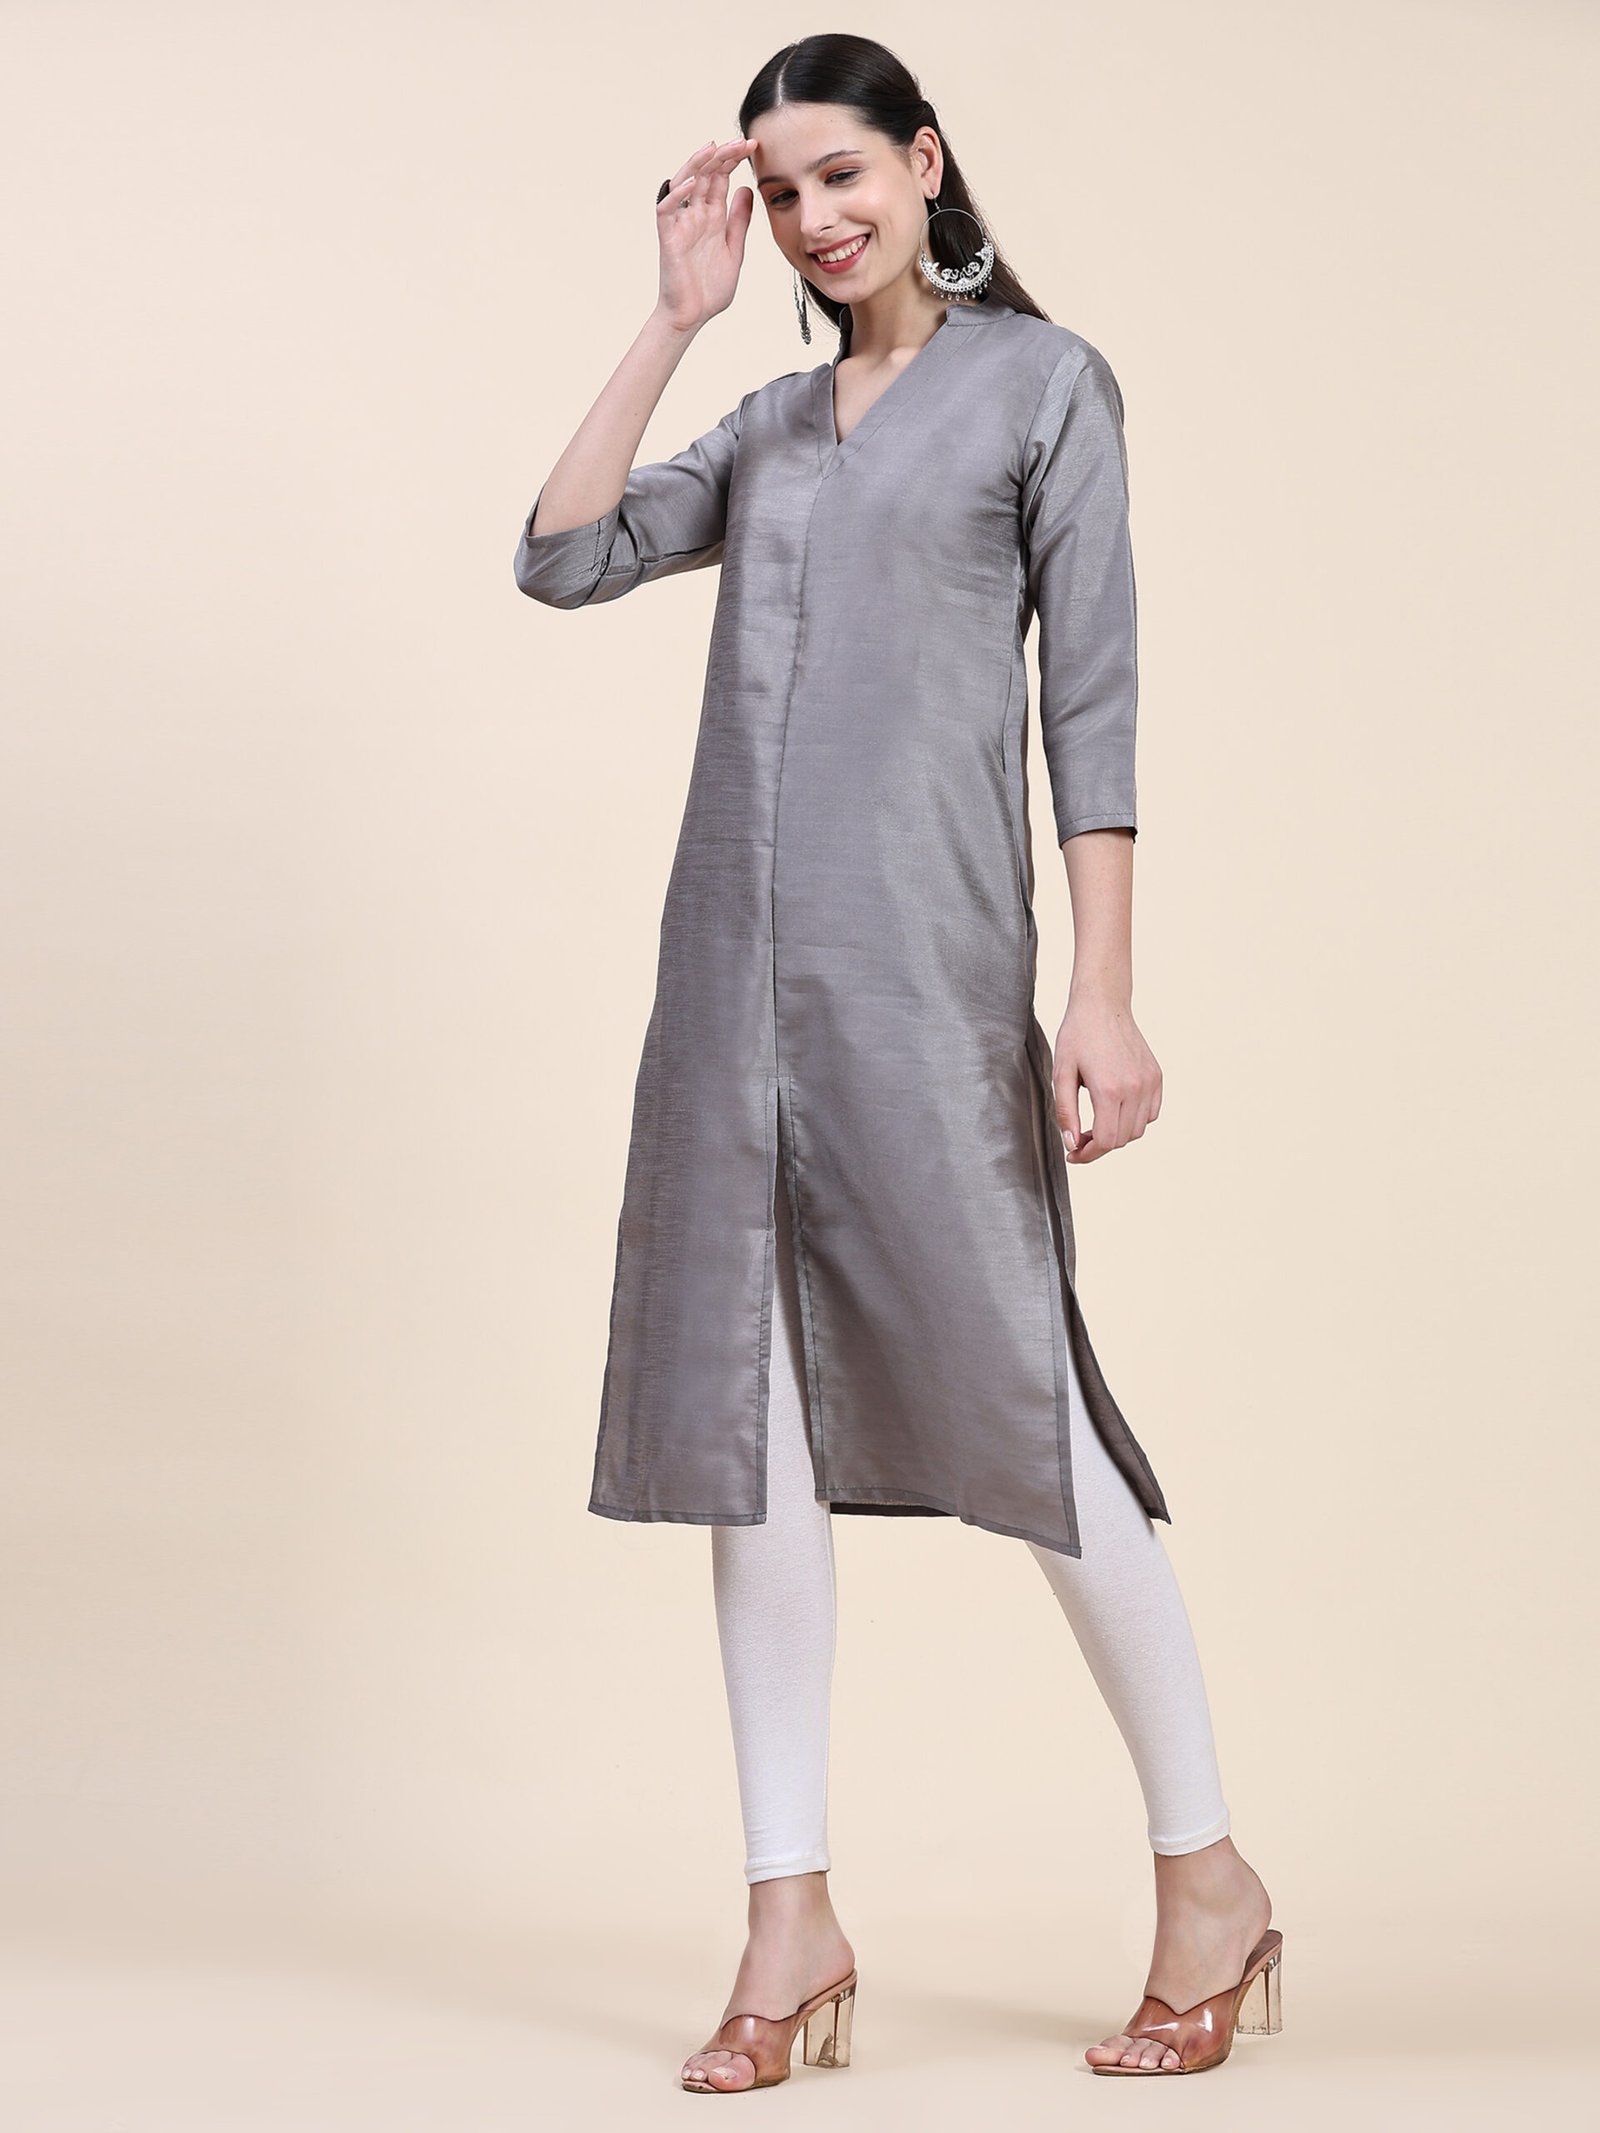 ISHIEQA's Grey Georgette Chikankari Kurti - DC1902C | Pakistani dress  design, Trendy dress outfits, Cotton kurti designs